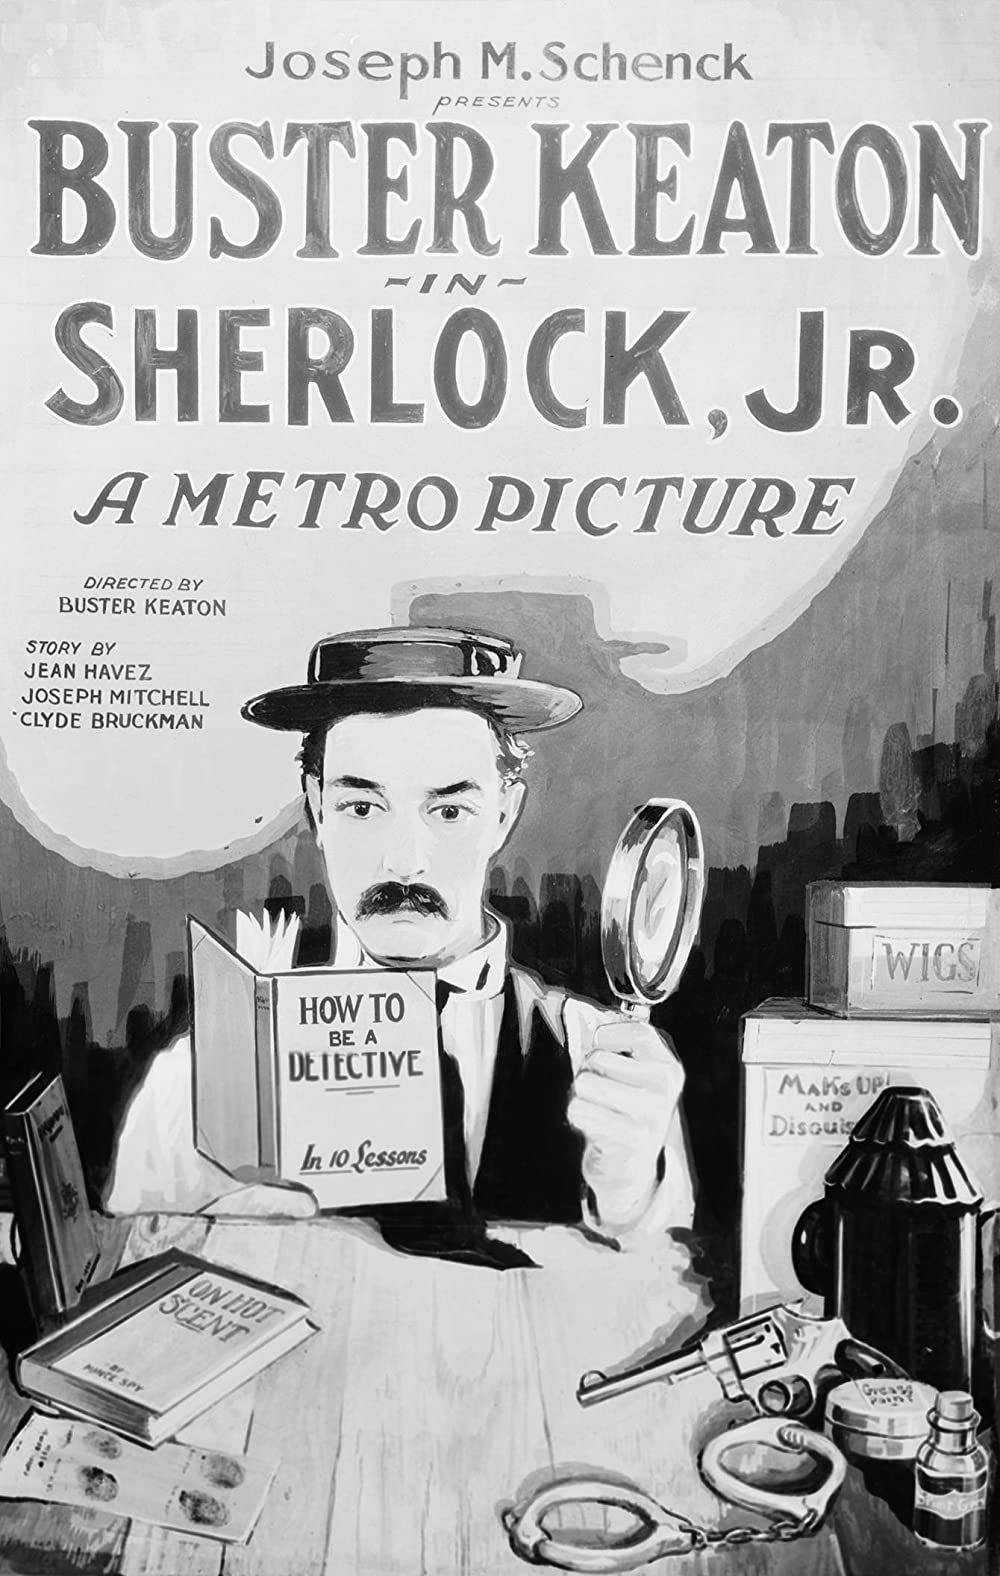 Filmbeschreibung zu Sherlock Jr.